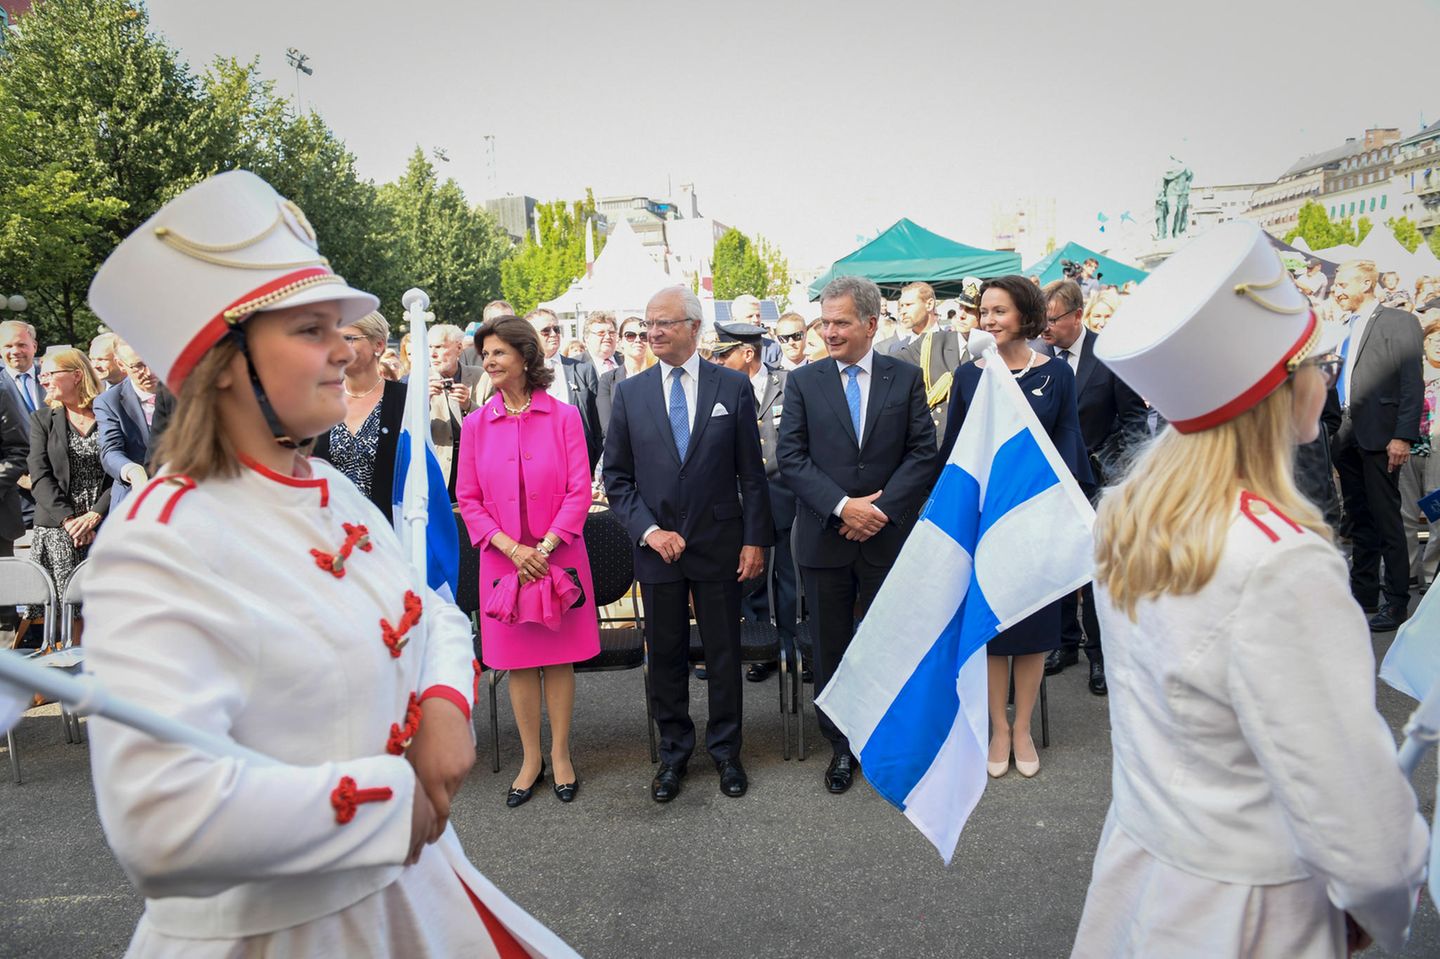 Nach dem Essen im Schloss zieht es das schwedische Königspaar und seine Gäste in den Kunstträdgaarden zur 100-Jahr-Feier für Finnland.